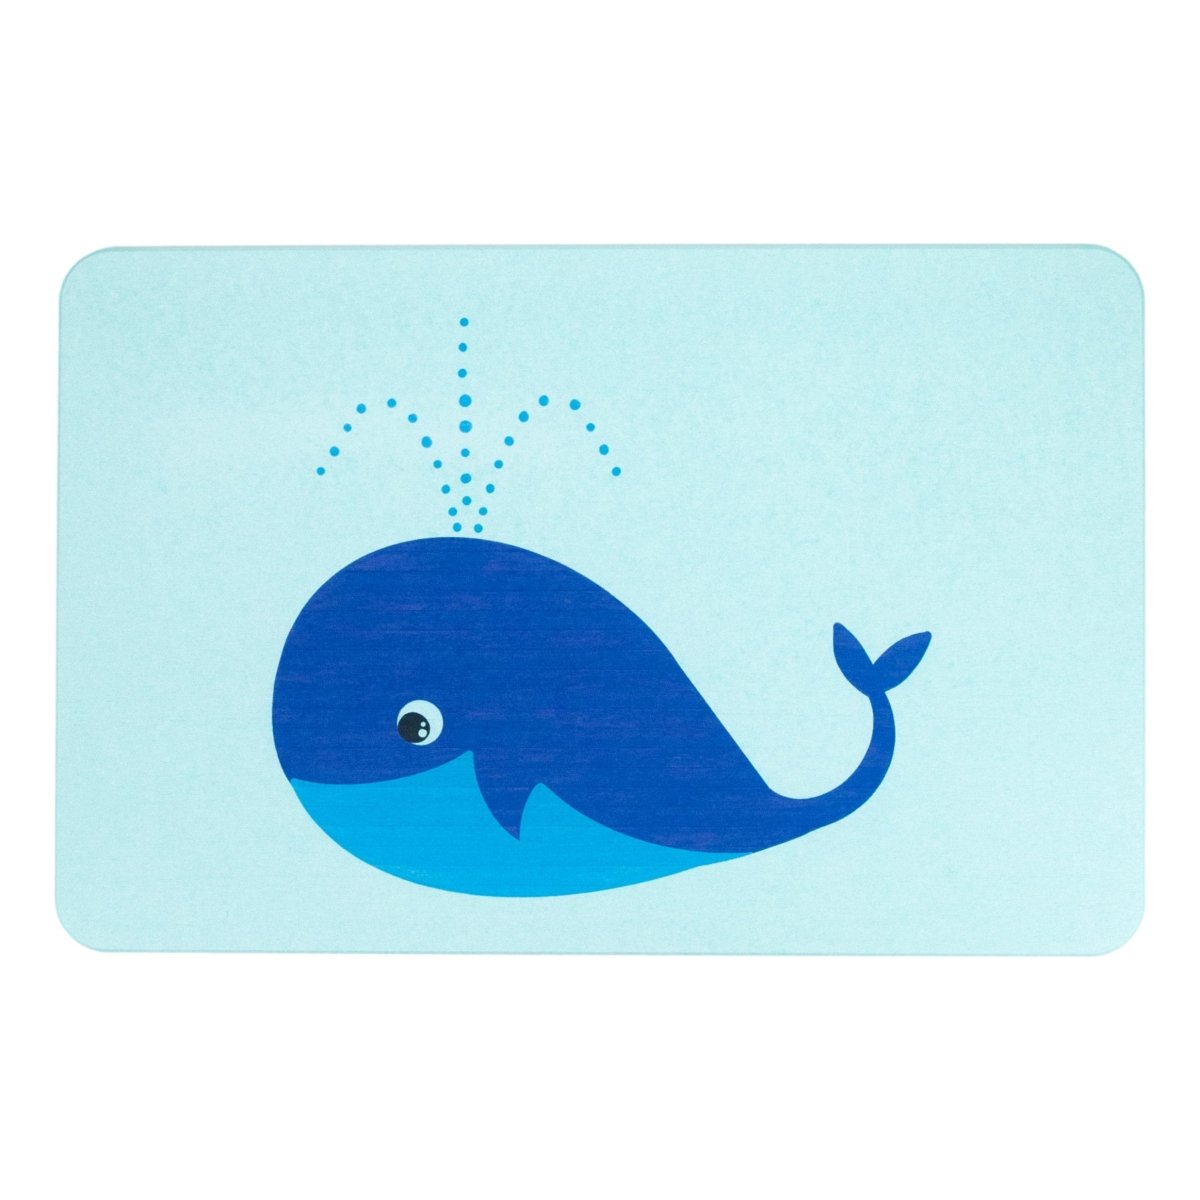 Whale Bathmat - Aqua Blue Mat - Stone Non Slip Bath Mat - Kids Bathroom Decor - Sea Animals Mat - Anti-Slipping Bathroom Whales Mat - Slips Away - 1344490327 -